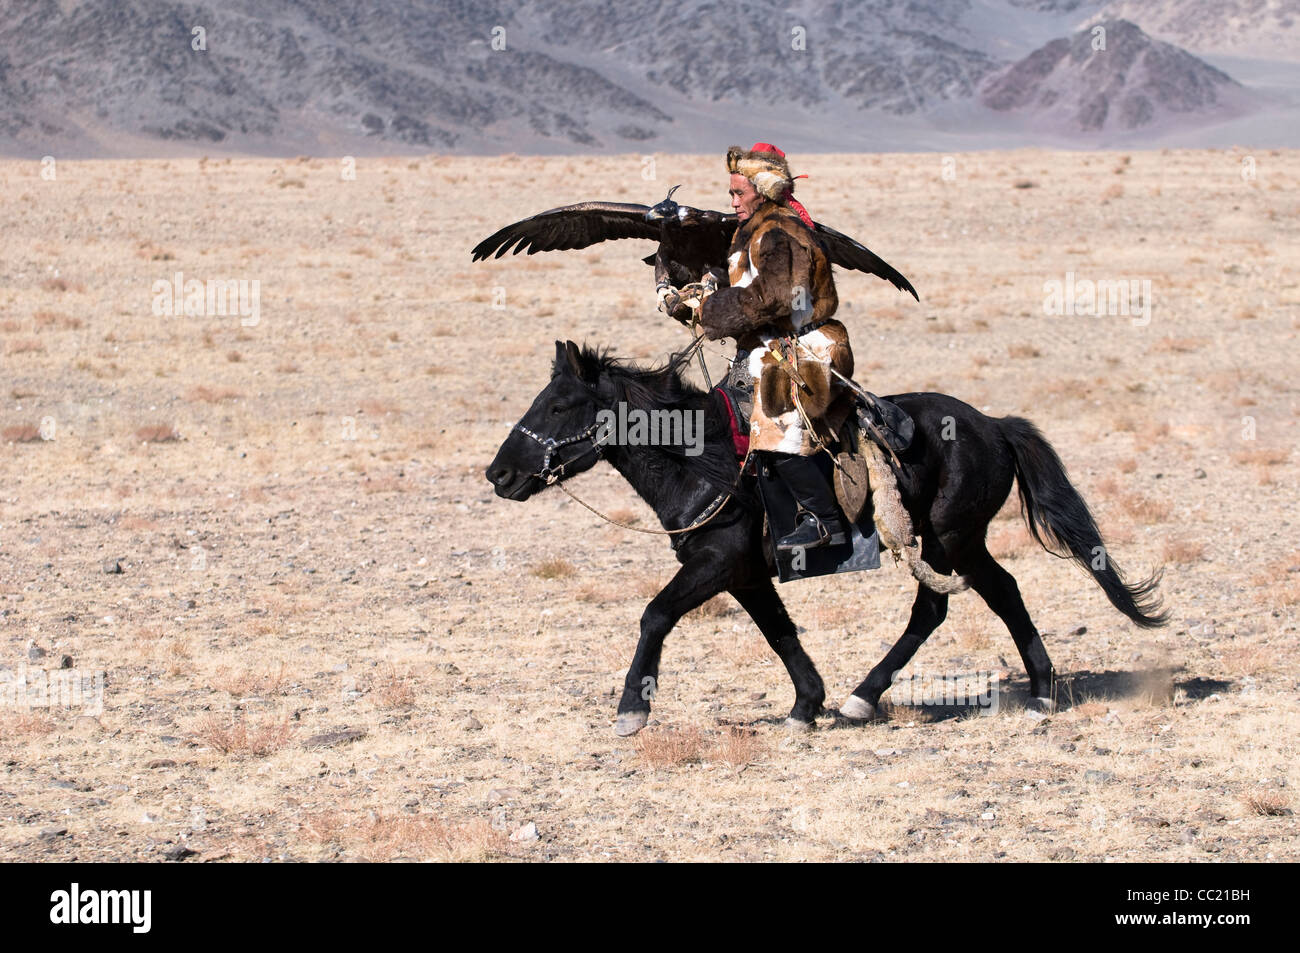 Un chasseur avec son aigle aigle dans la région de l'Altaï de Mongolie occidentale. Banque D'Images